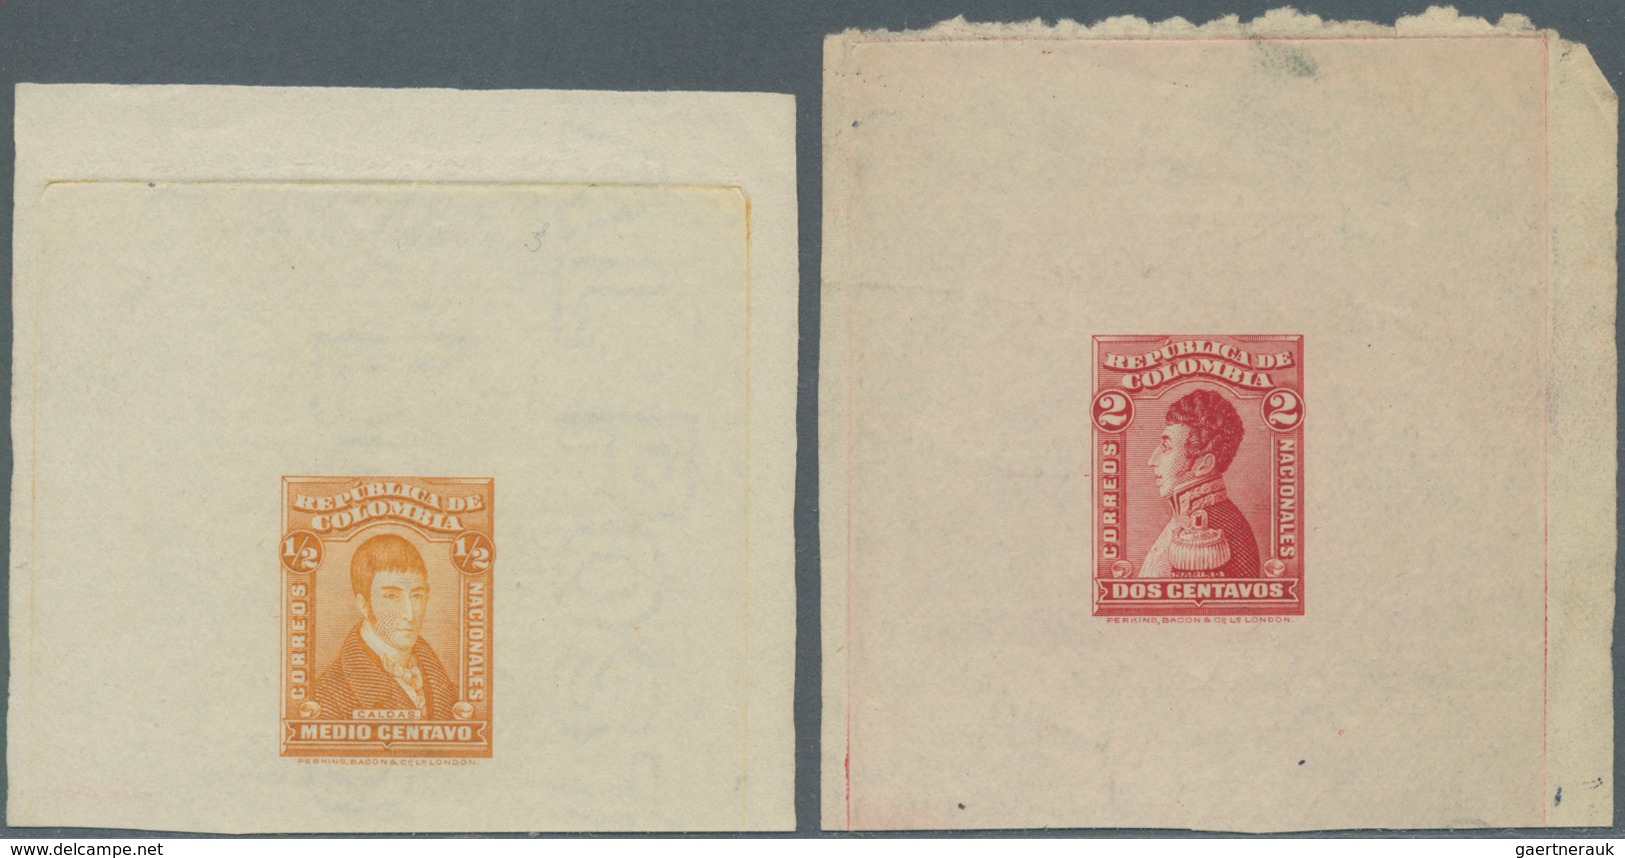 Kolumbien: 1917, Caldas 1/2 C. And Nerino 2 C. Single Die Proofs By Perkins & Bacon, The 1/2 C. On W - Kolumbien